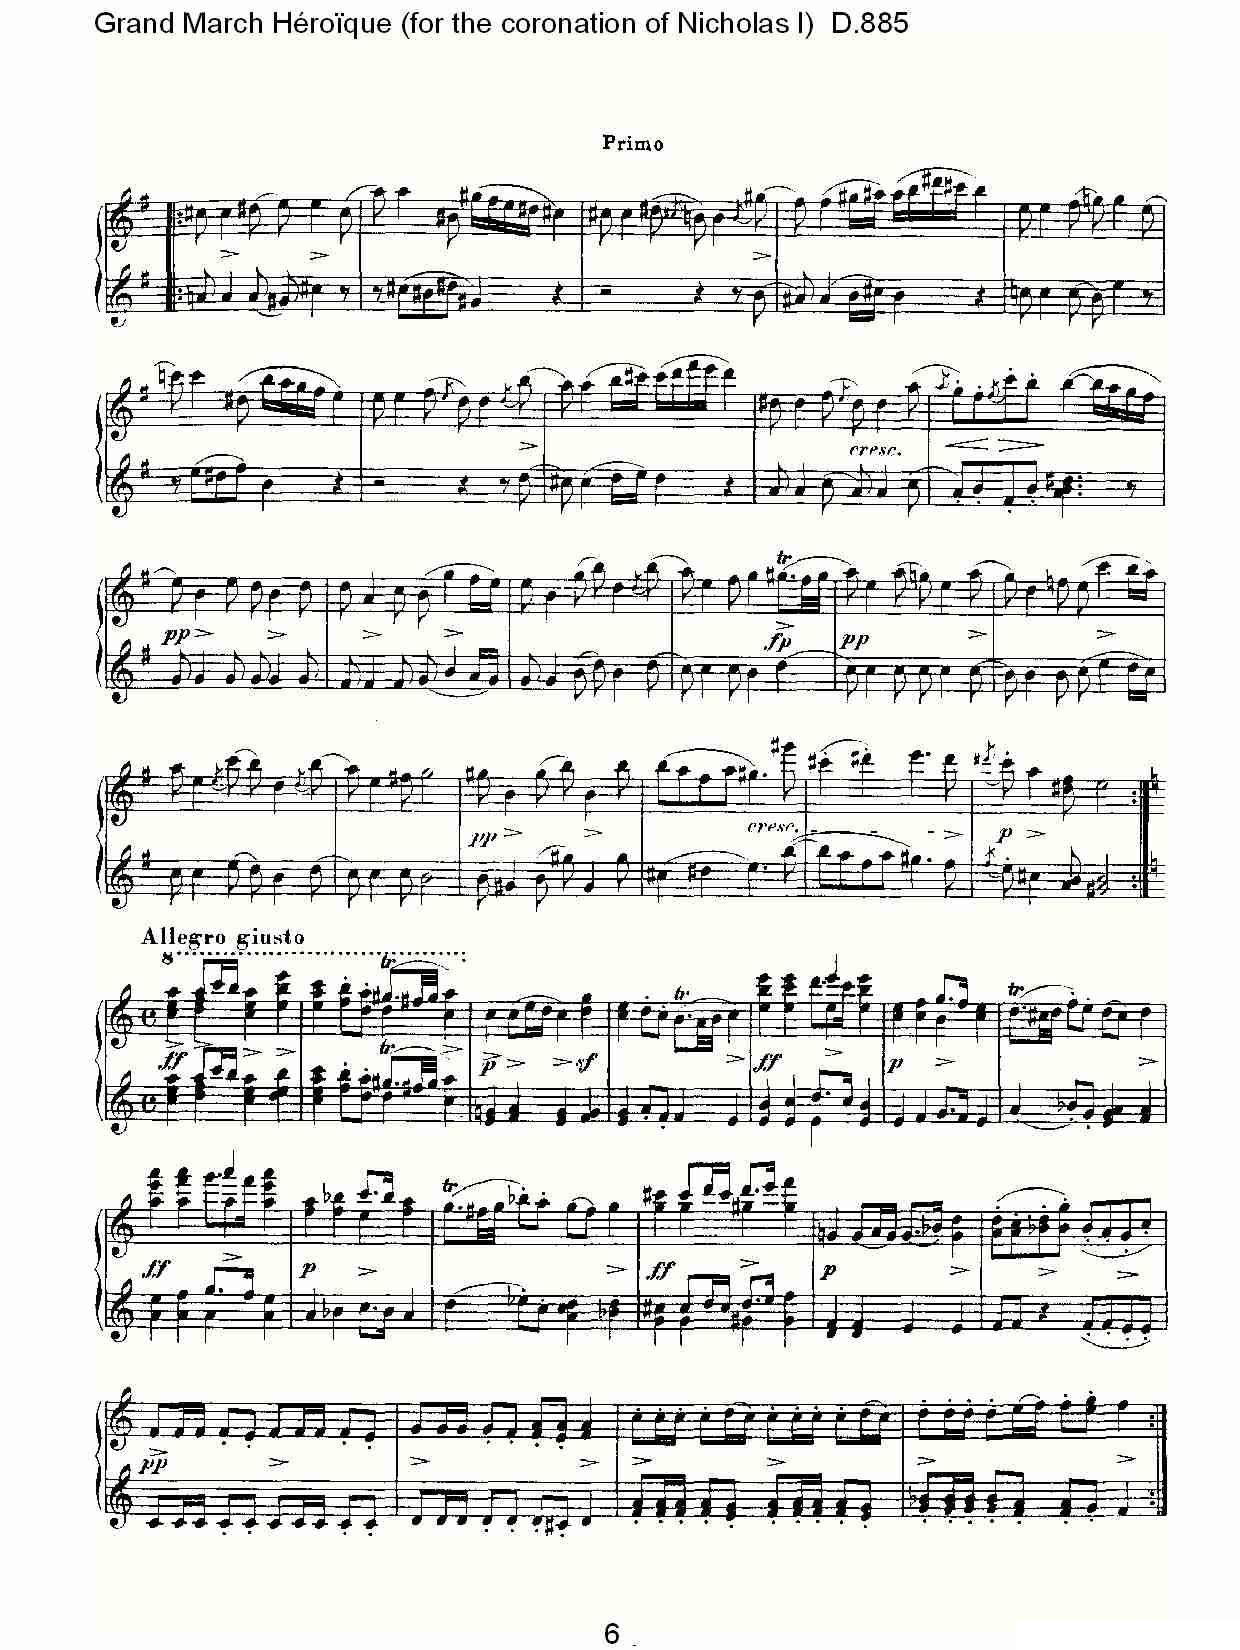 豪华进行曲（为尼古拉斯一世加冕礼而作)D.88）钢琴曲谱（图6）